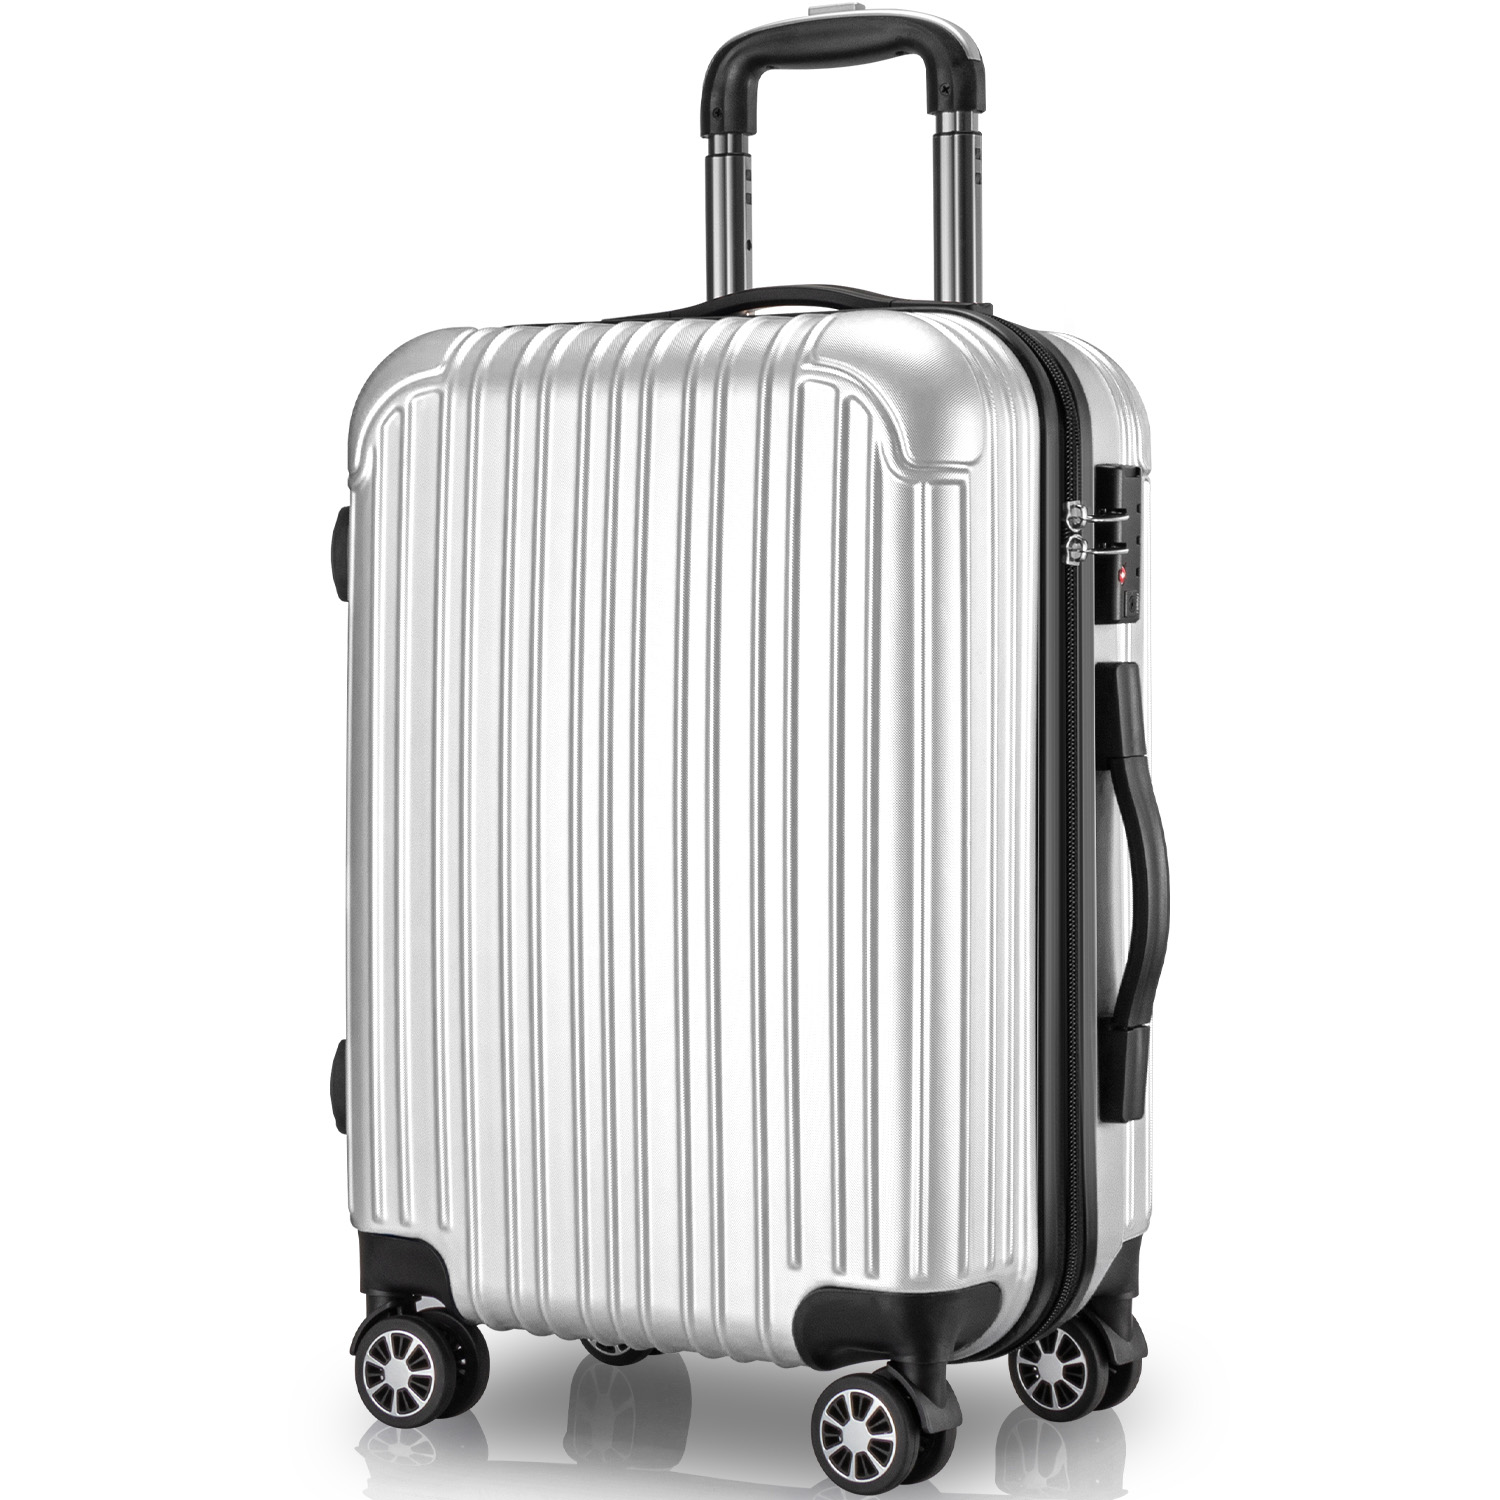 VARNIC スーツケース キャリーバッグ キャリーケース 静音 TSAローク PC素材 軽量 ファスナー式 Mサイズ